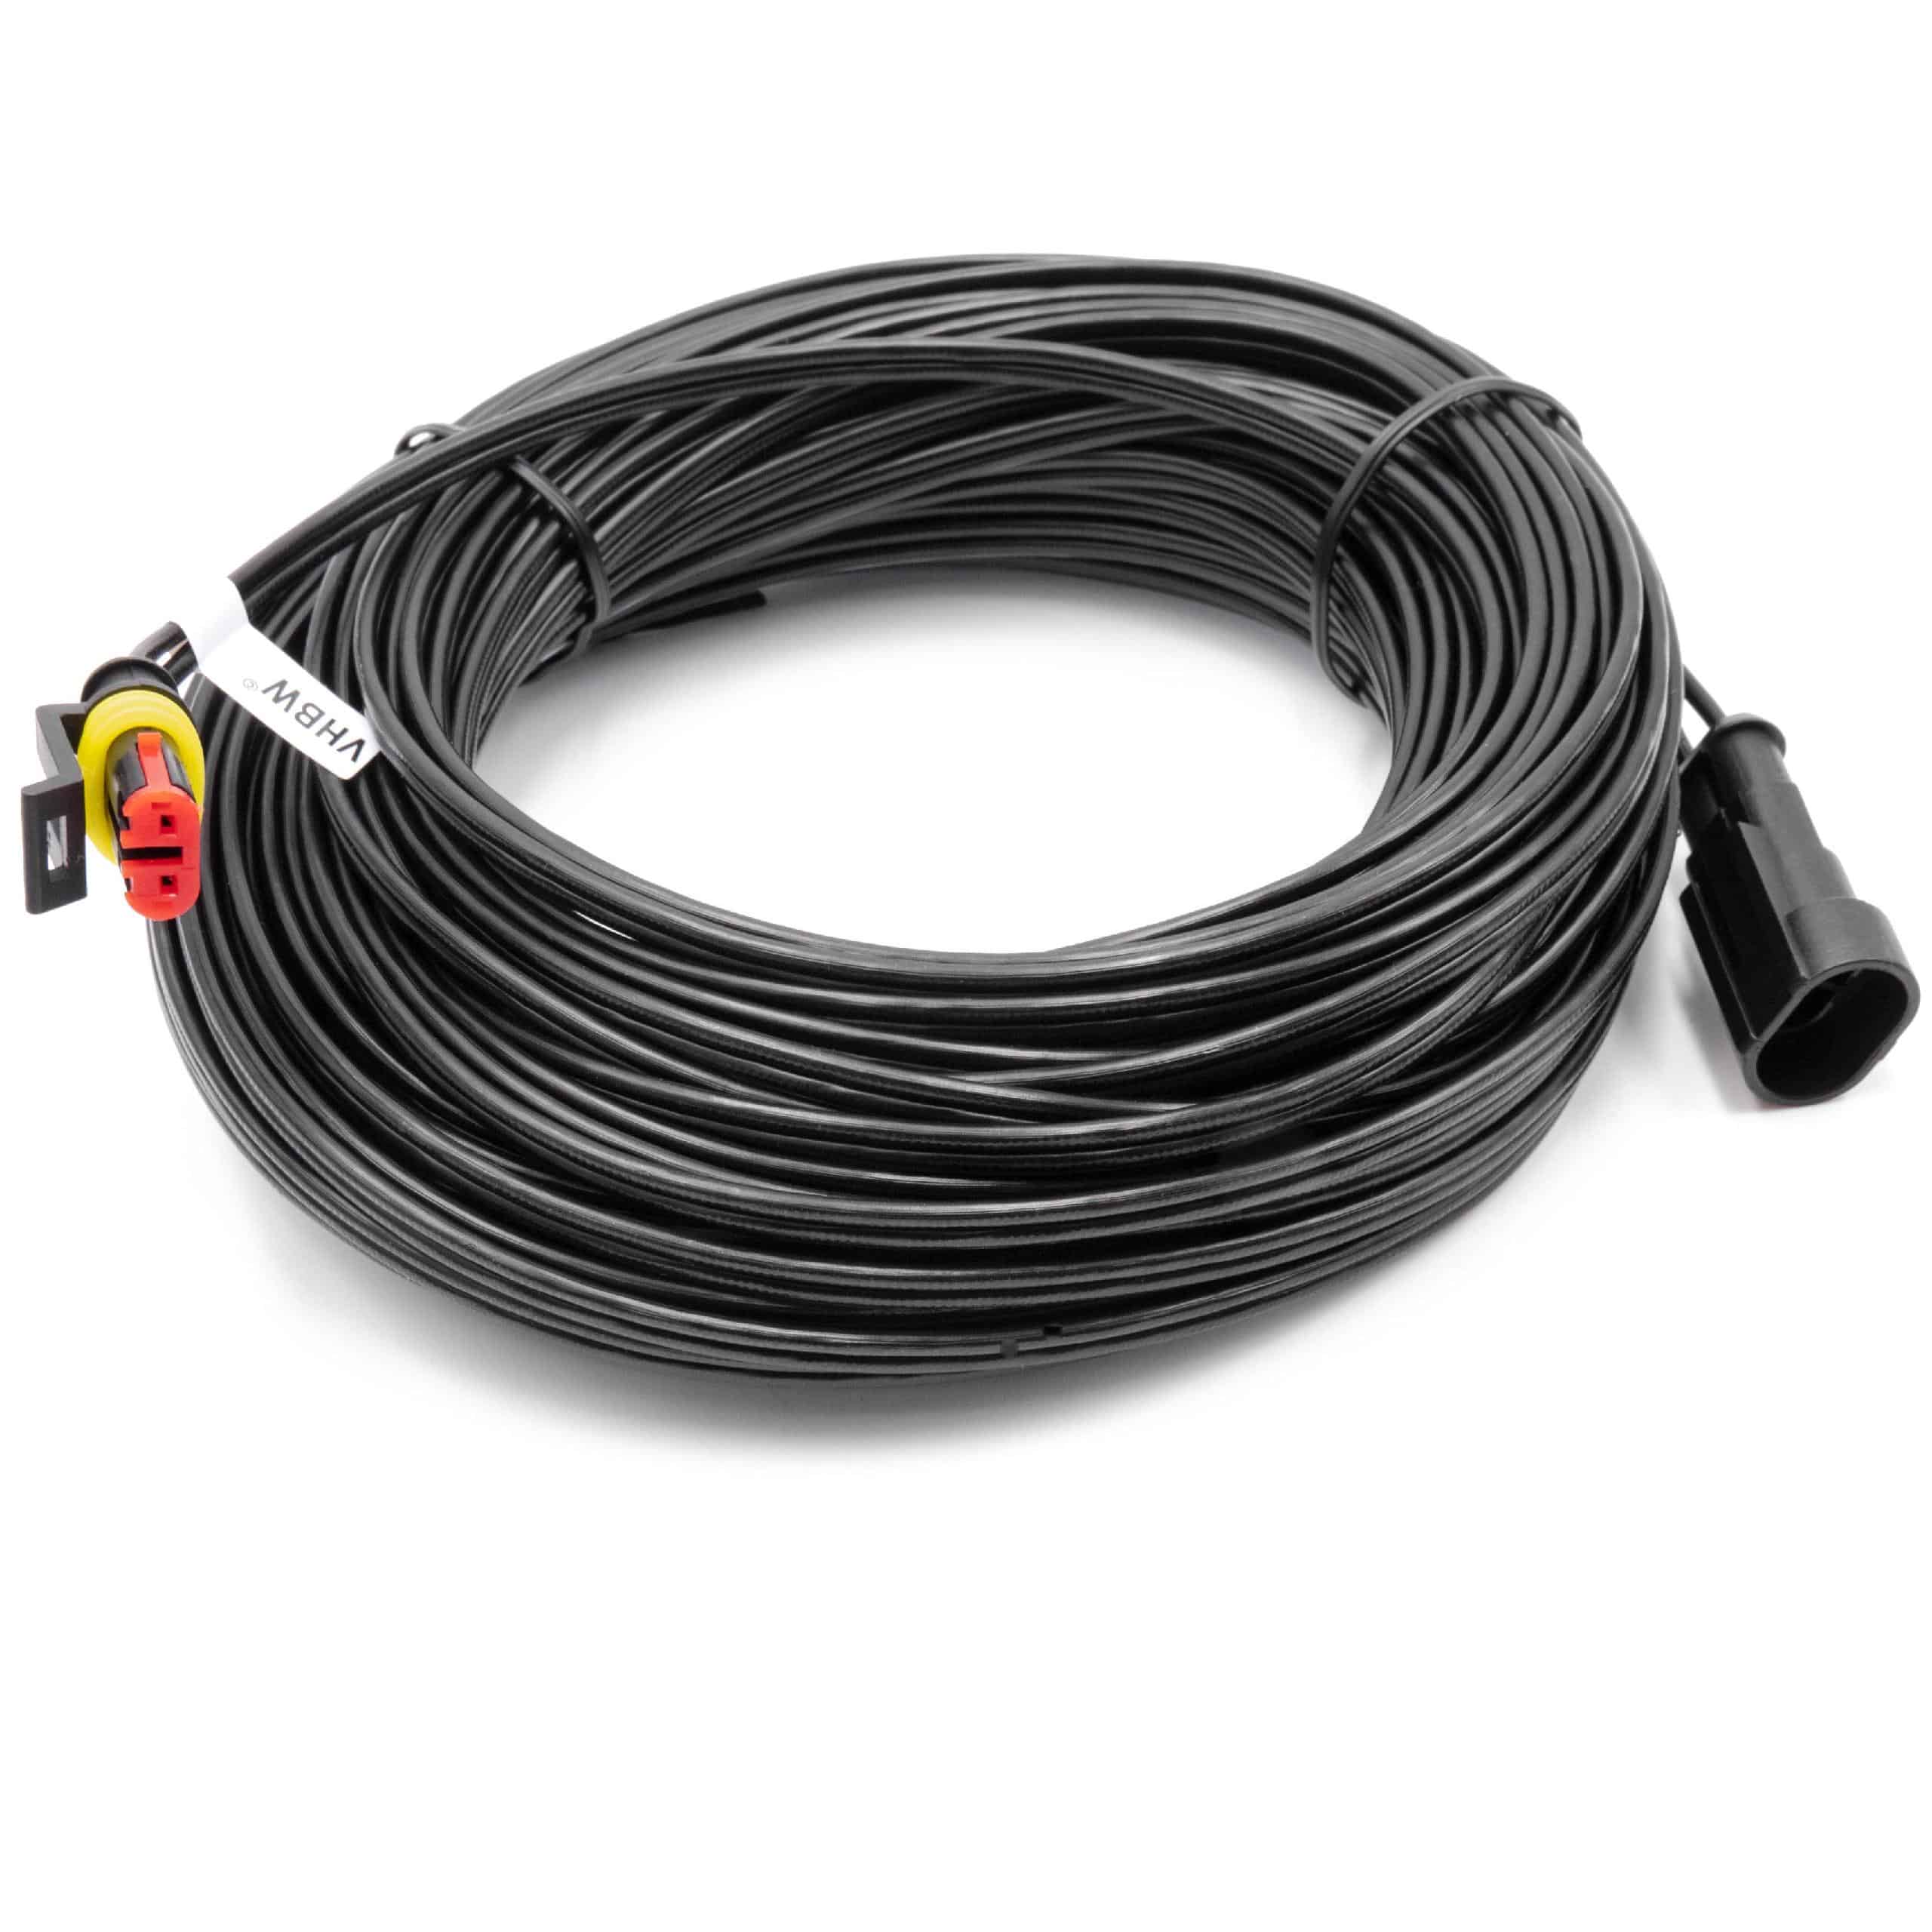 Low Voltage Cable replaces Honda 31786-VP7-013 for HondaRobot Lawn Mower etc. 20 m